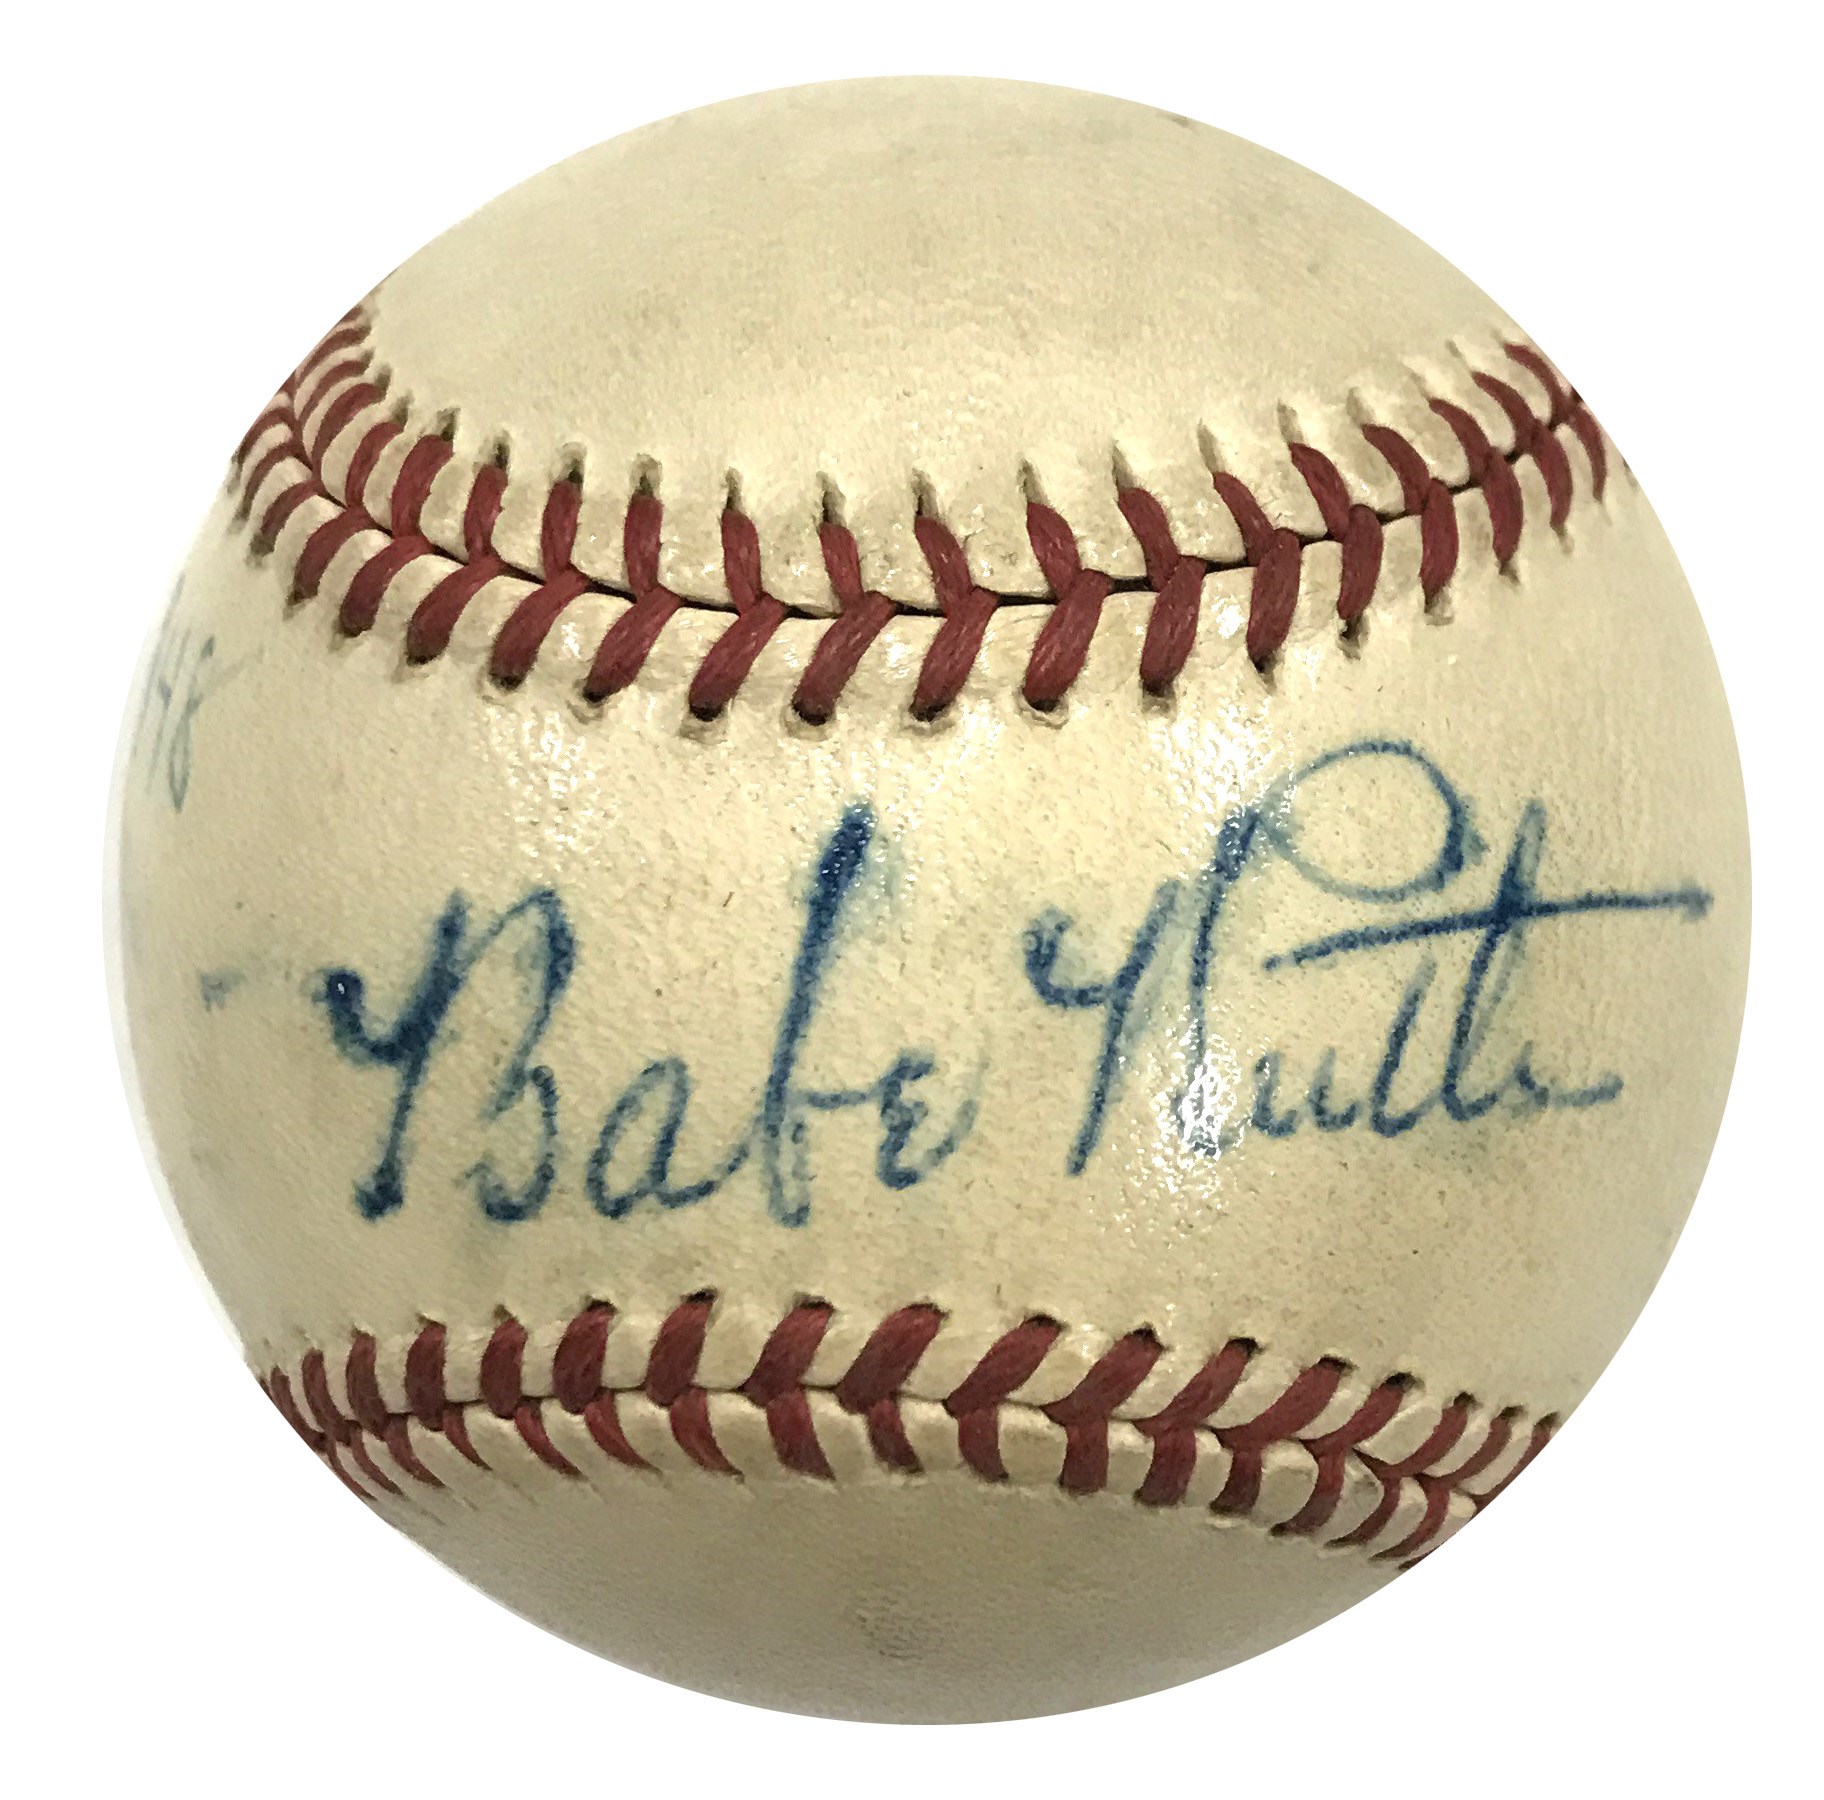 - 1948 Babe Ruth Single Signed Baseball (PSA)